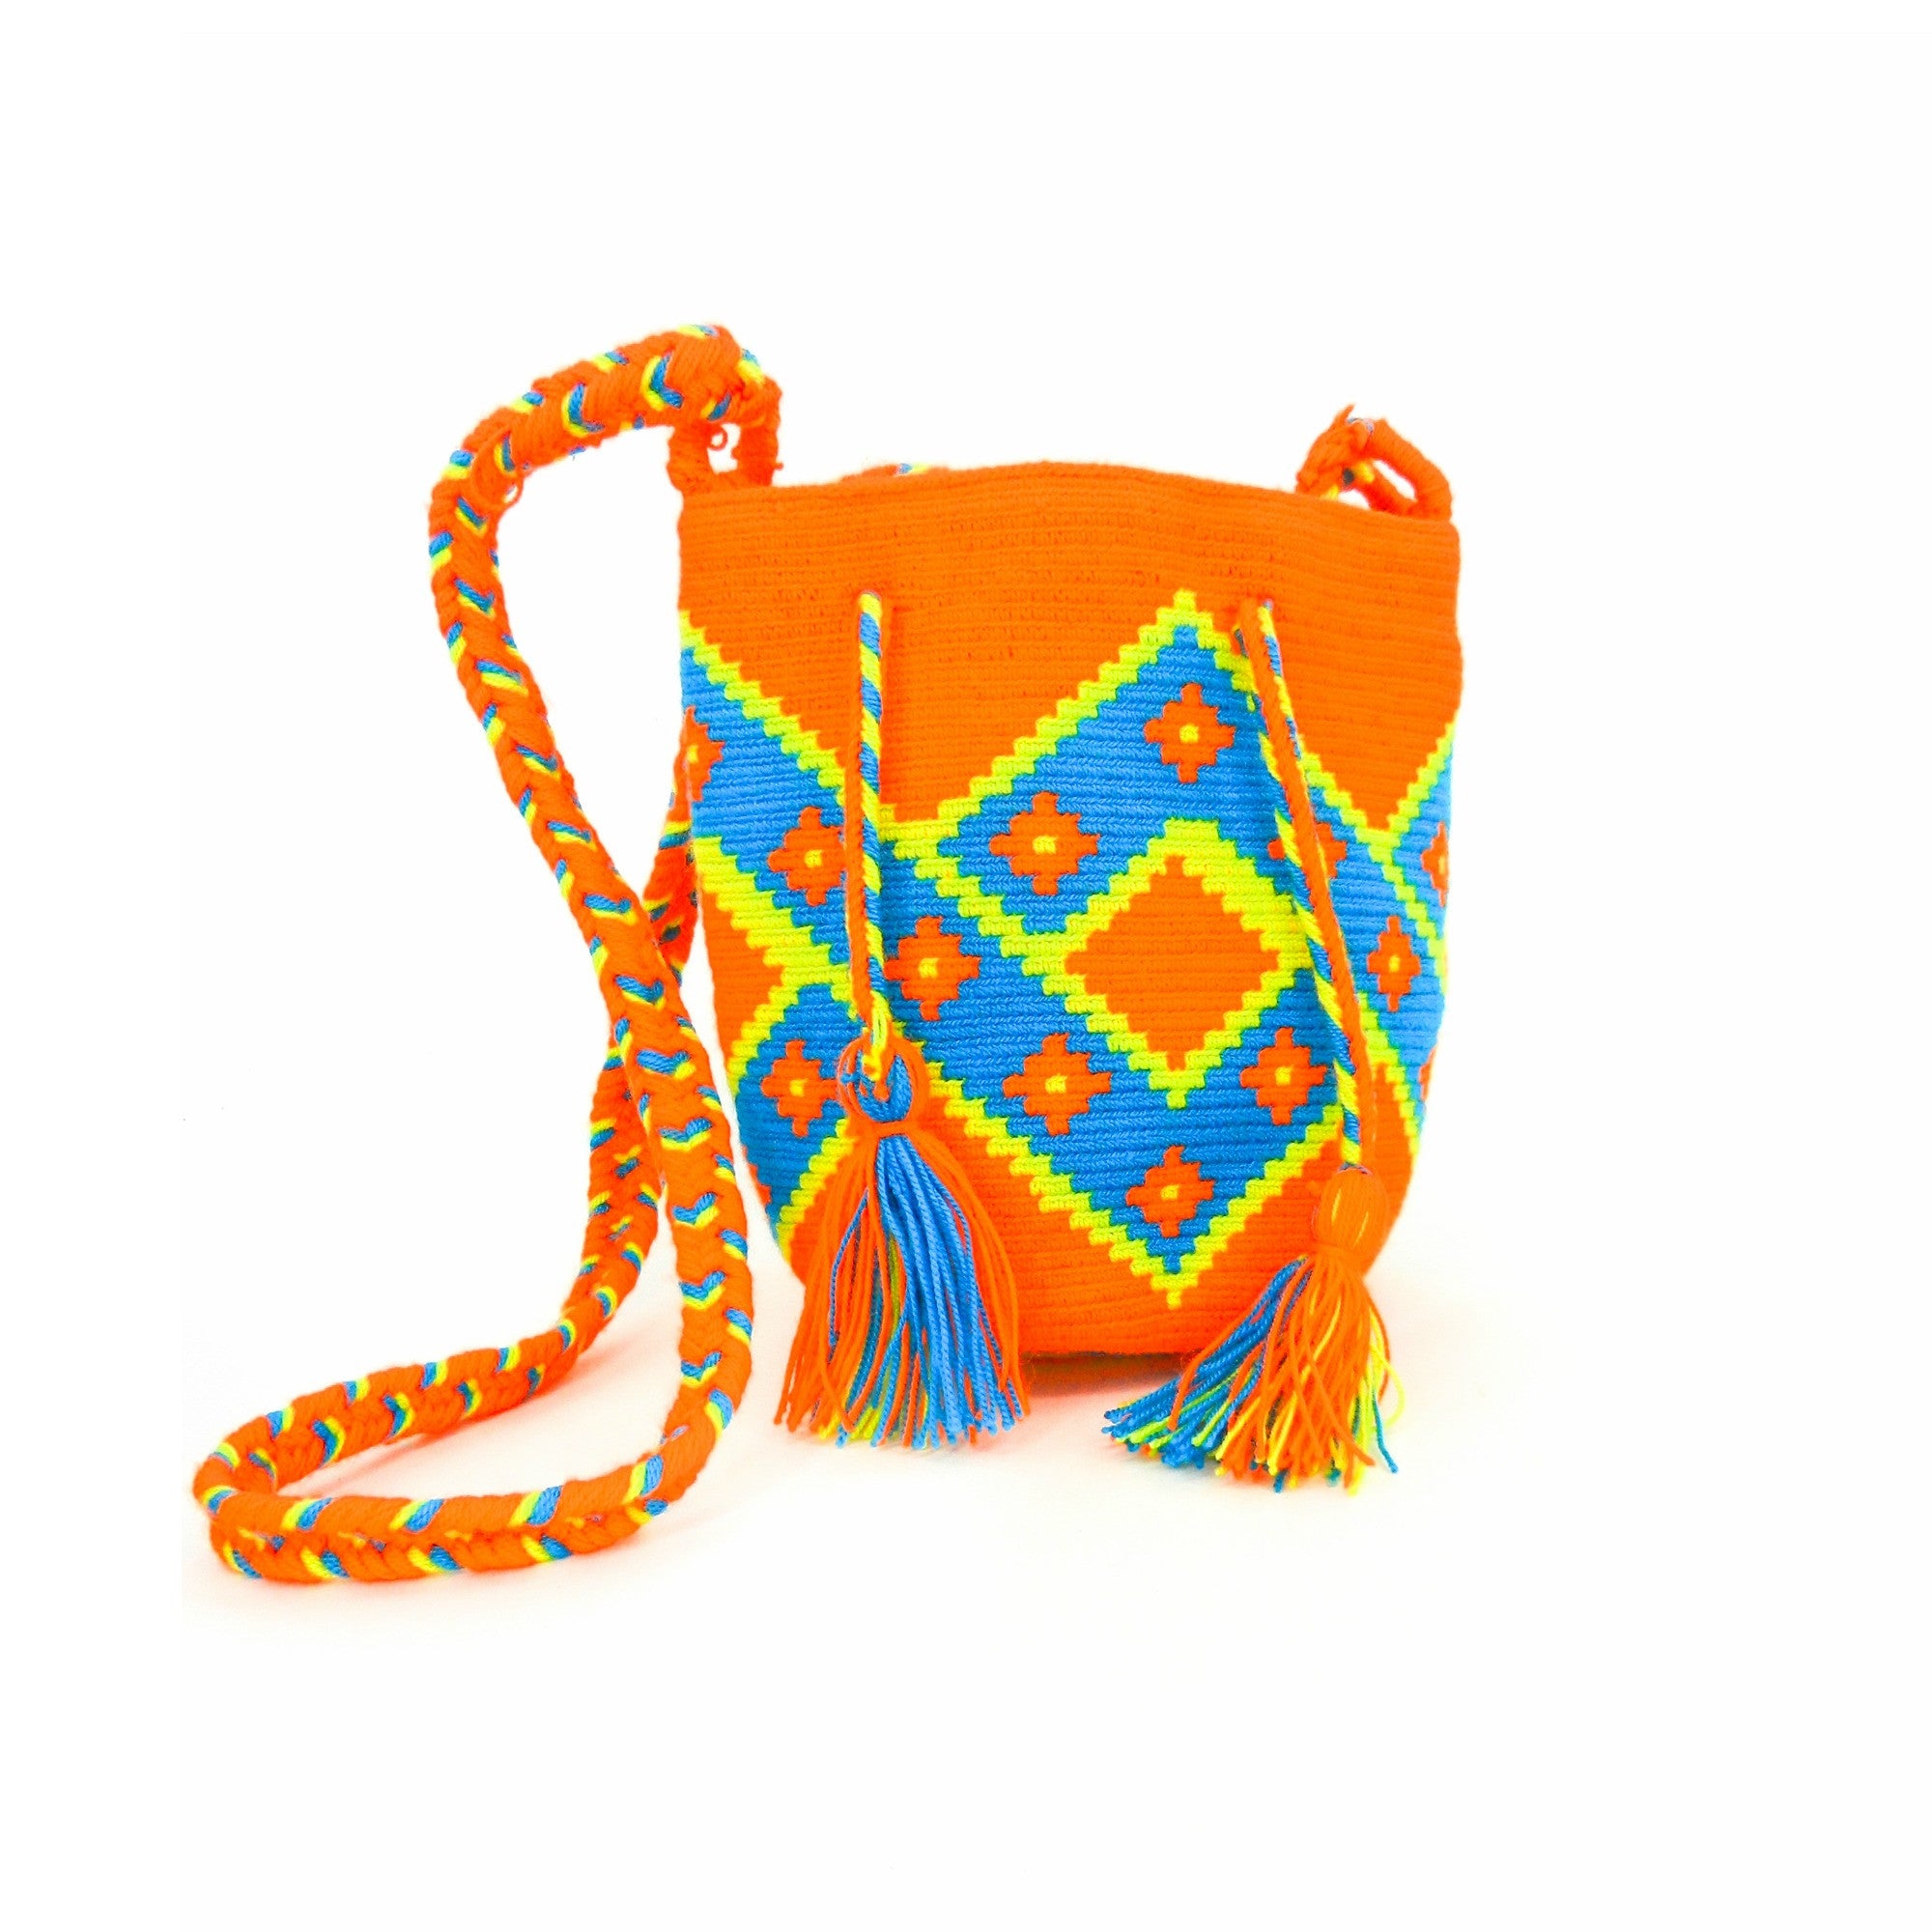 Curolletes - Mini mochila de tela Elmer